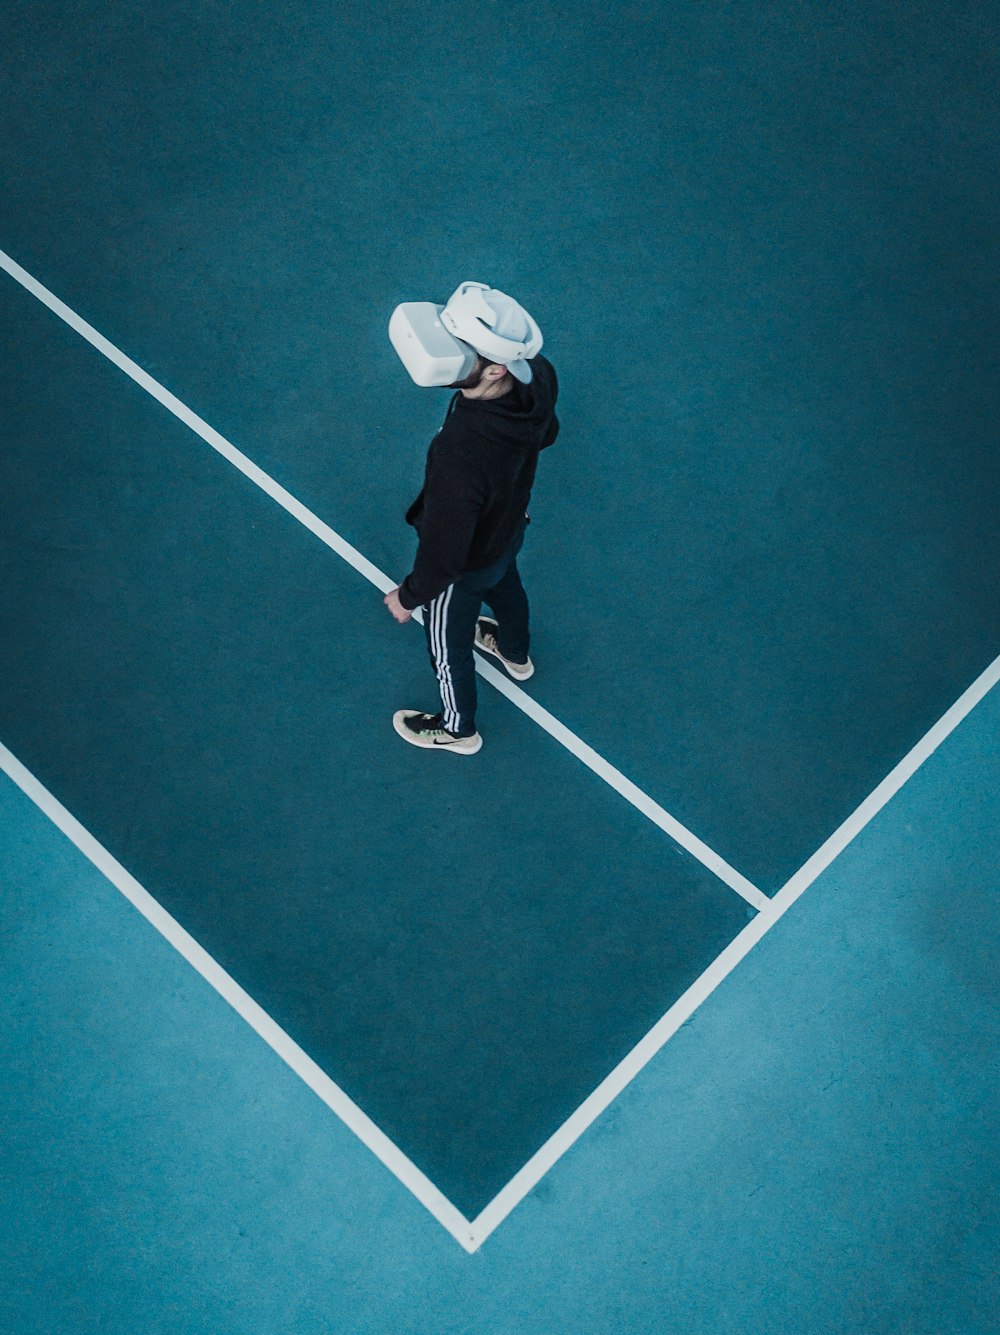 homme en survêtement portant un casque VR debout sur un court de tennis